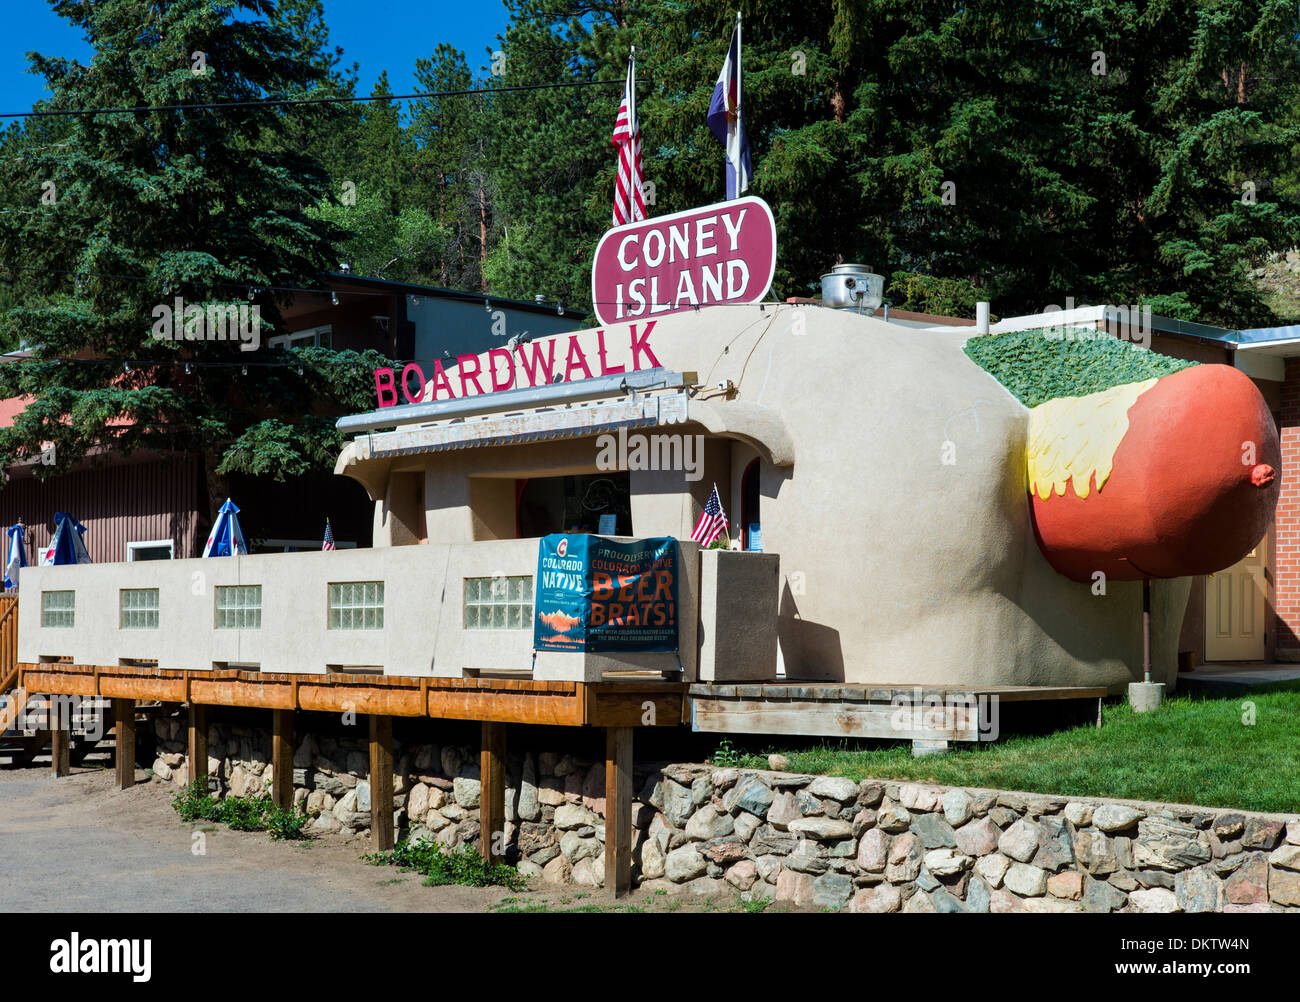 Coney Island Colorado in Bailey, Colorado è un 1950s diner conformata come un gigante di hot dog, con condimenti. Foto Stock